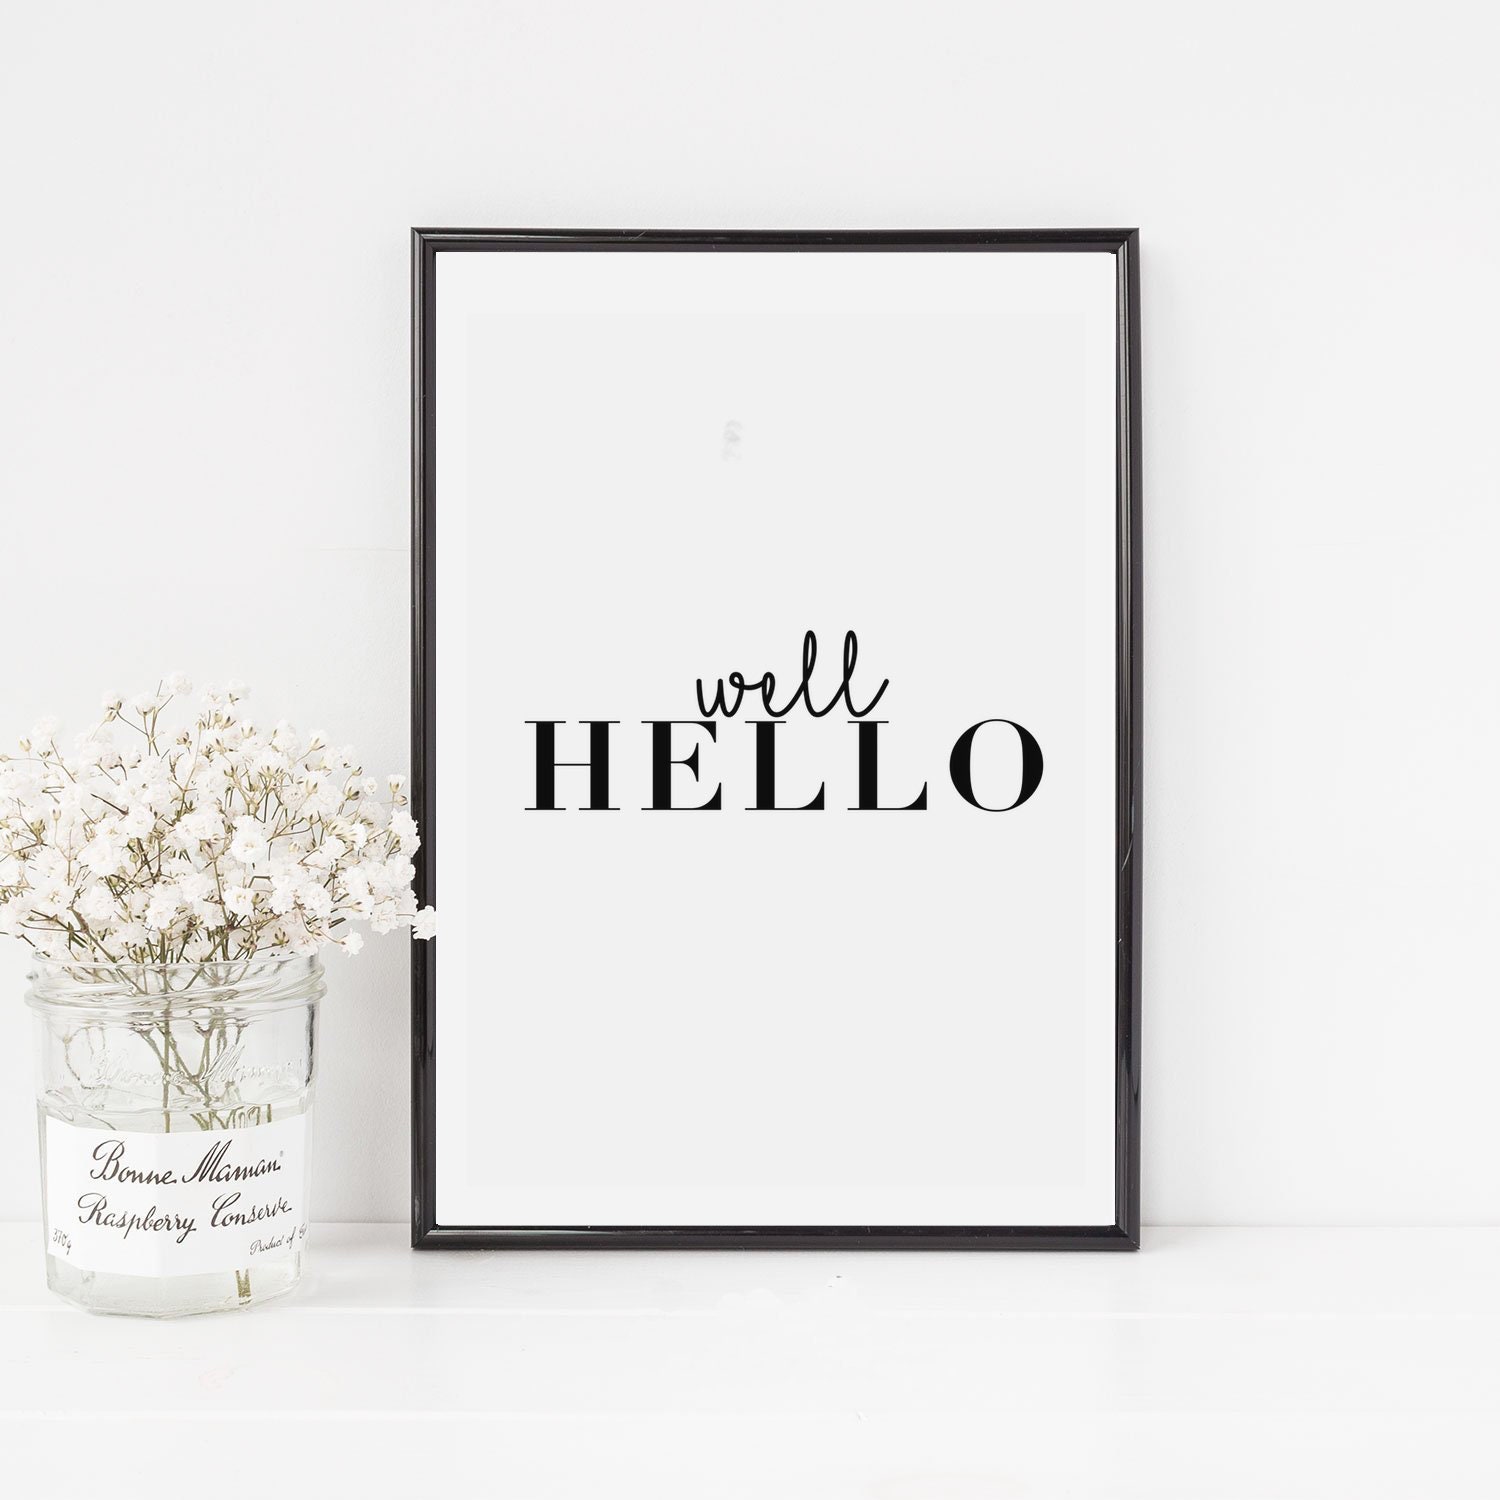 Como utilizar productos impresos para decorar tu hogar - Helloprint